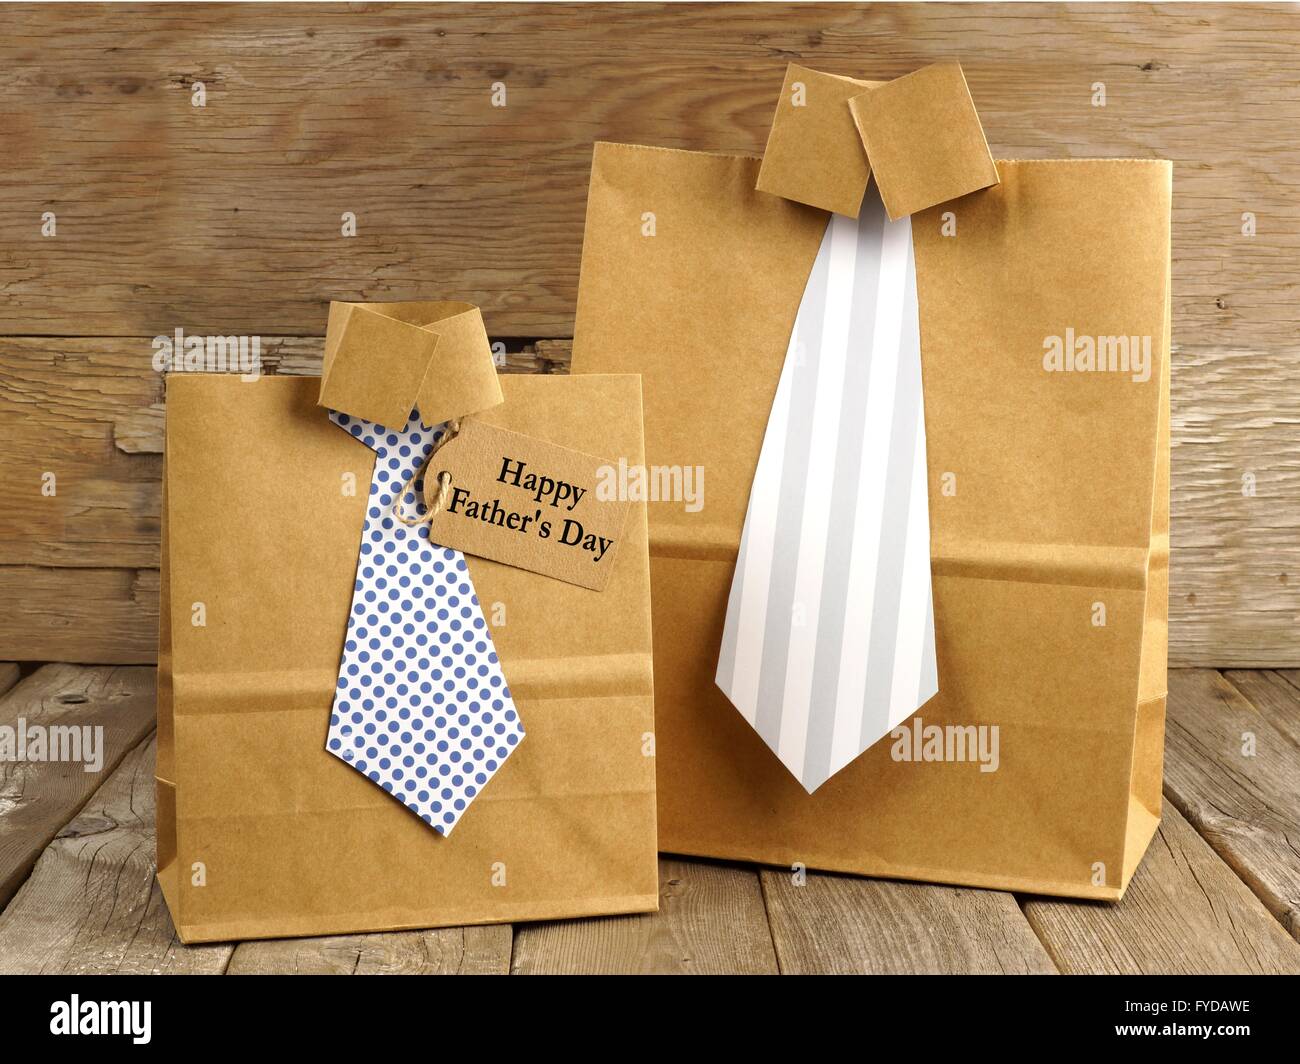 Väter Tag handgemachte Hemd und Krawatte Geschenktüten mit Grußkarte auf  Holz Hintergrund Stockfotografie - Alamy